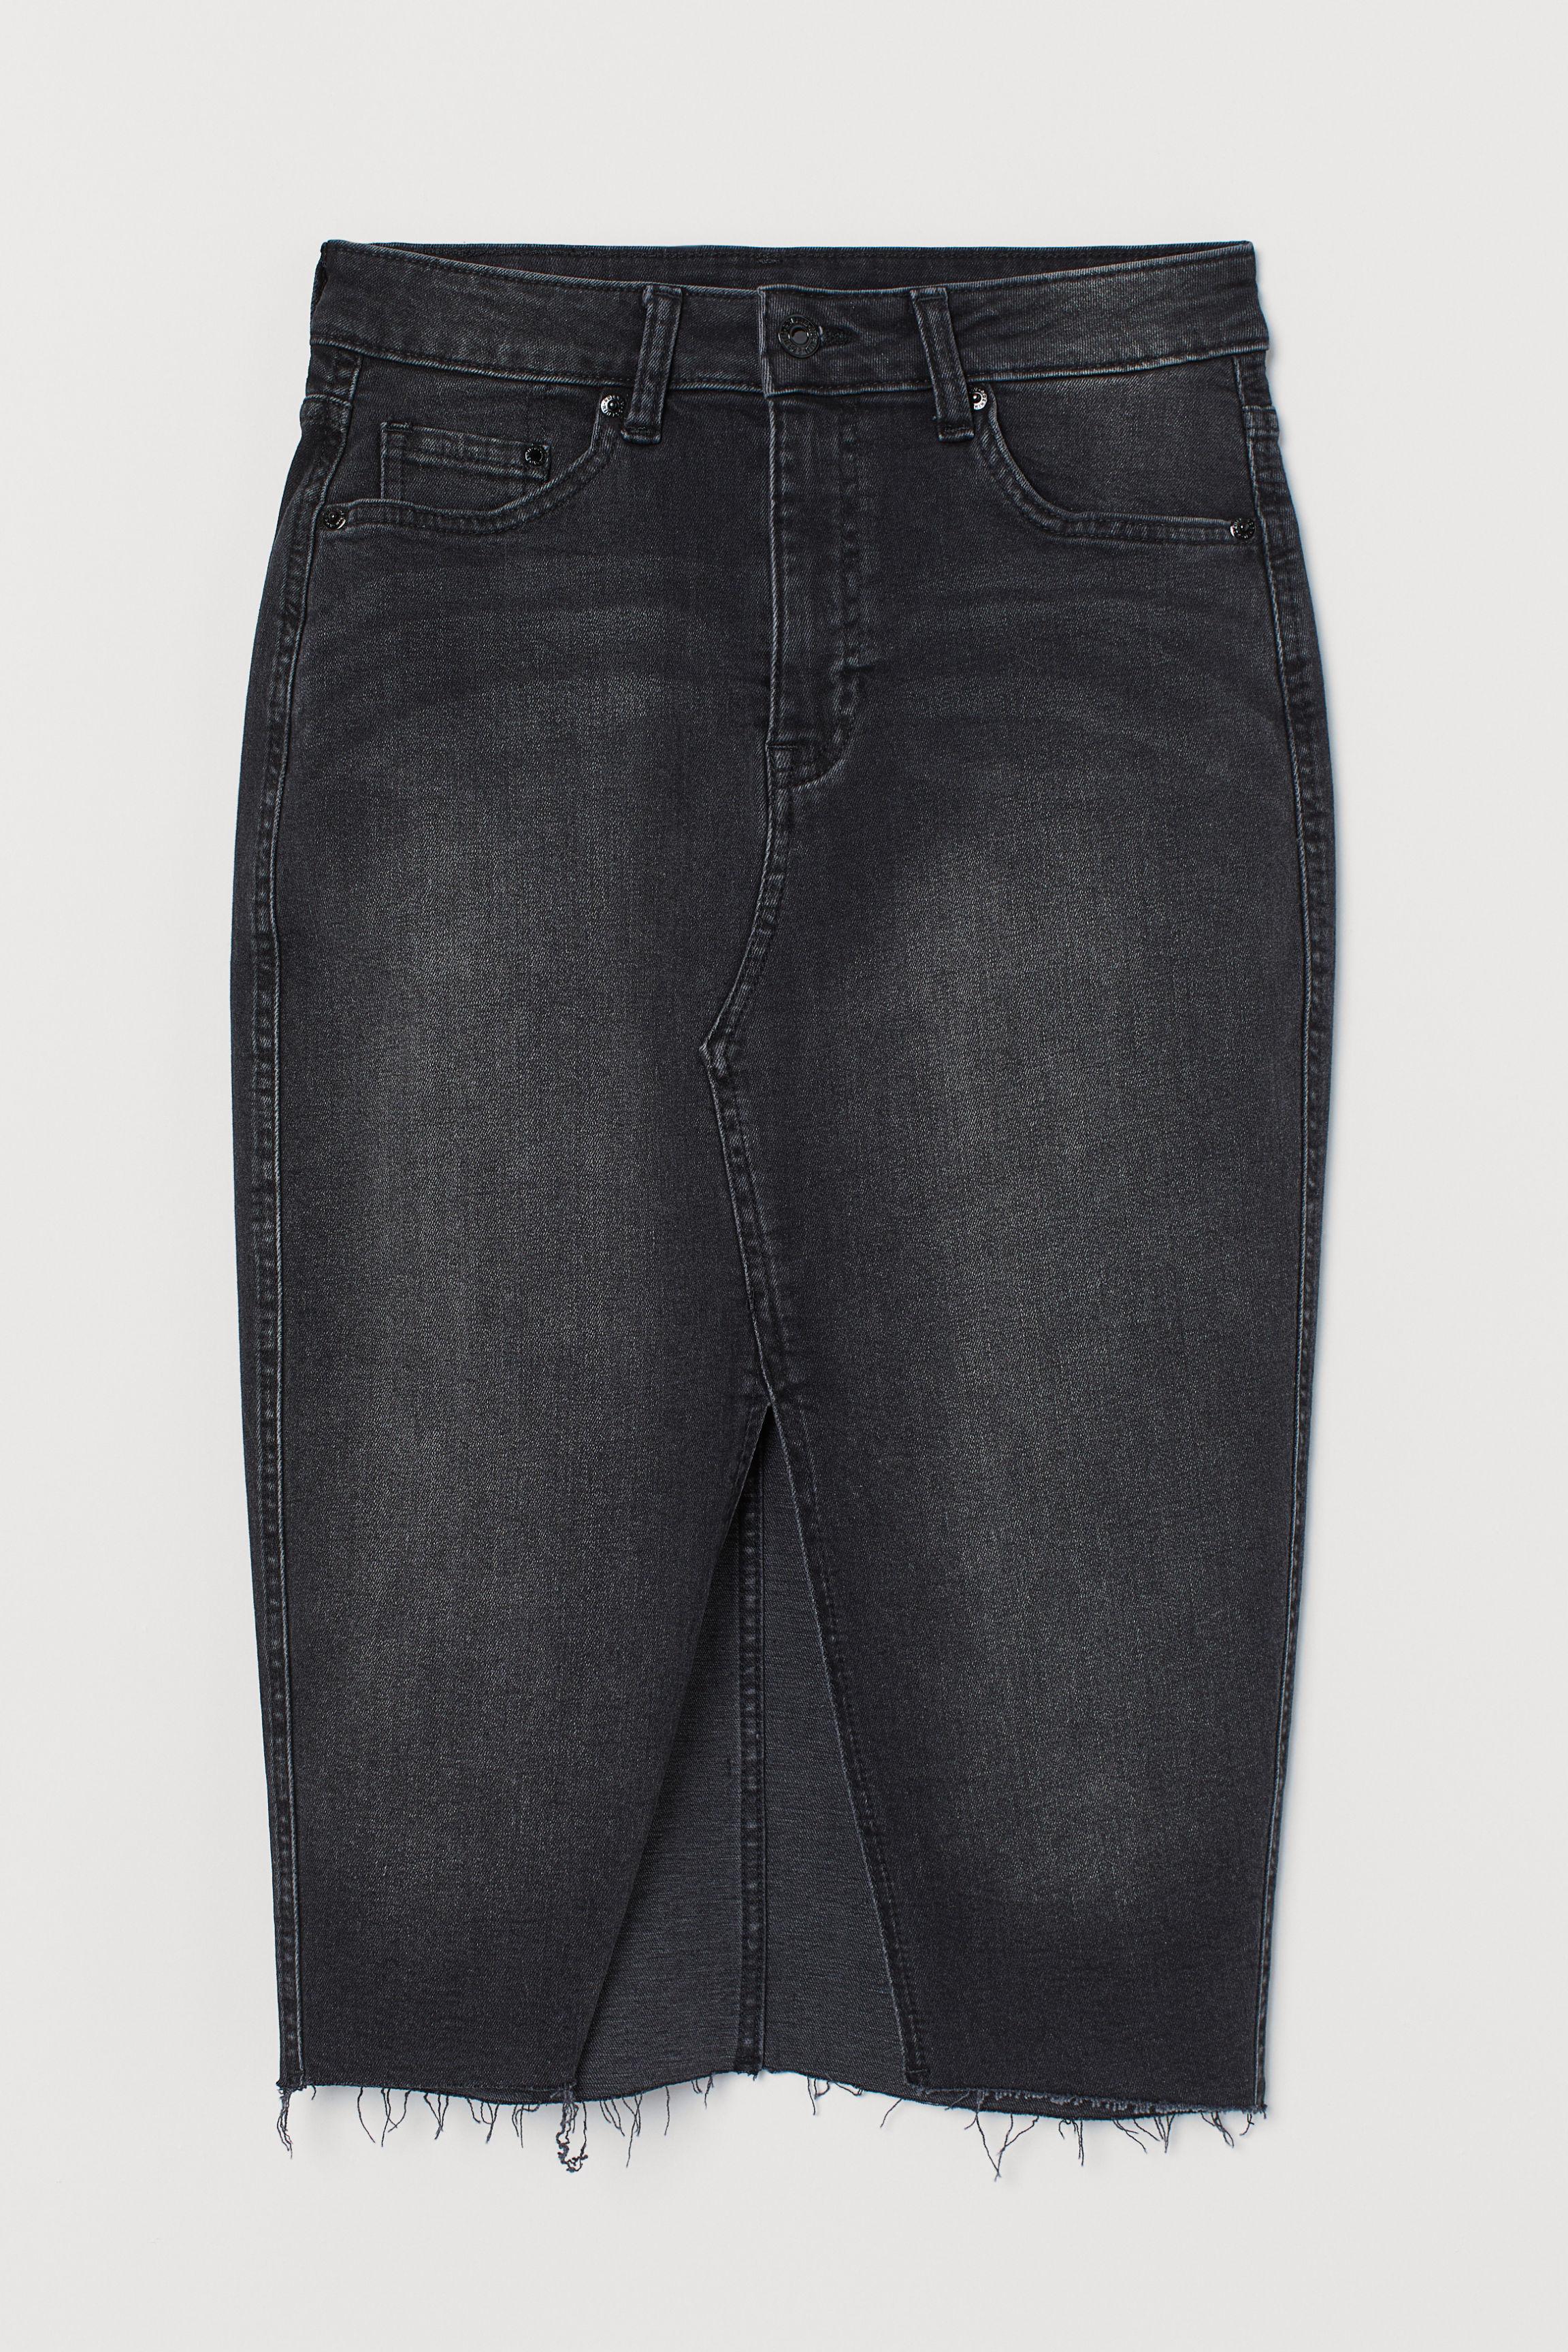 H&M Knee-length Denim Skirt in Black - Lyst